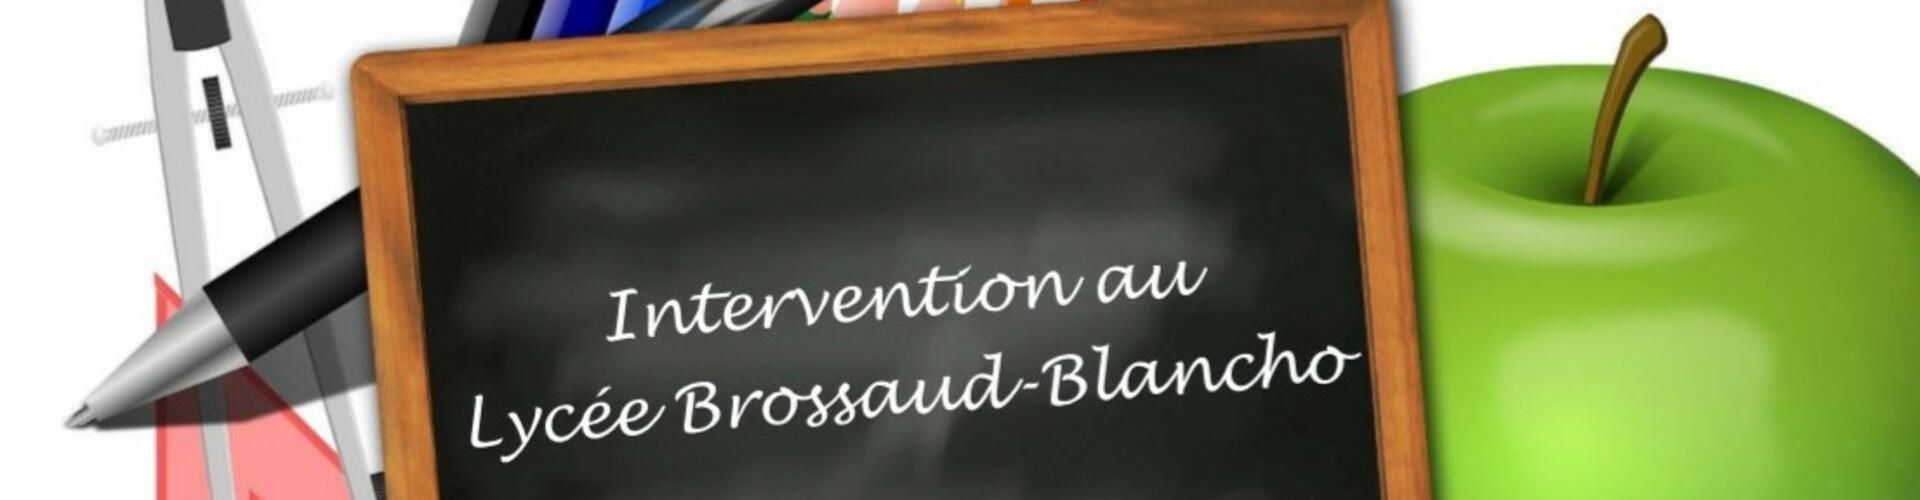 Intervention-Lycee-Brossaud-Blancho